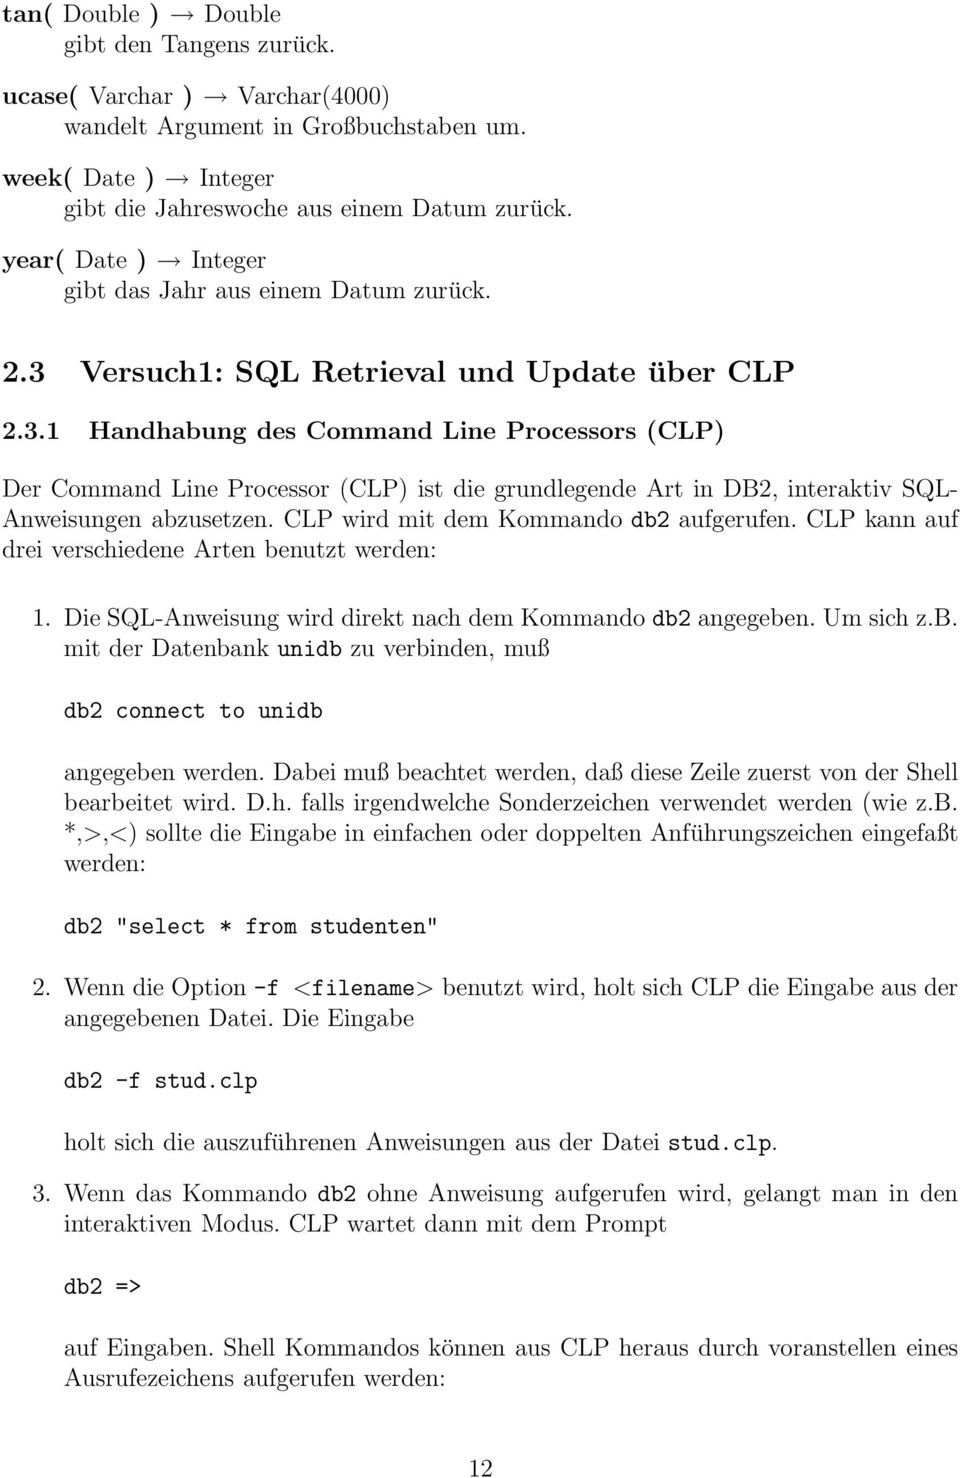 Versuch1: SQL Retrieval und Update über CLP 2.3.1 Handhabung des Command Line Processors (CLP) Der Command Line Processor (CLP) ist die grundlegende Art in DB2, interaktiv SQL- Anweisungen abzusetzen.